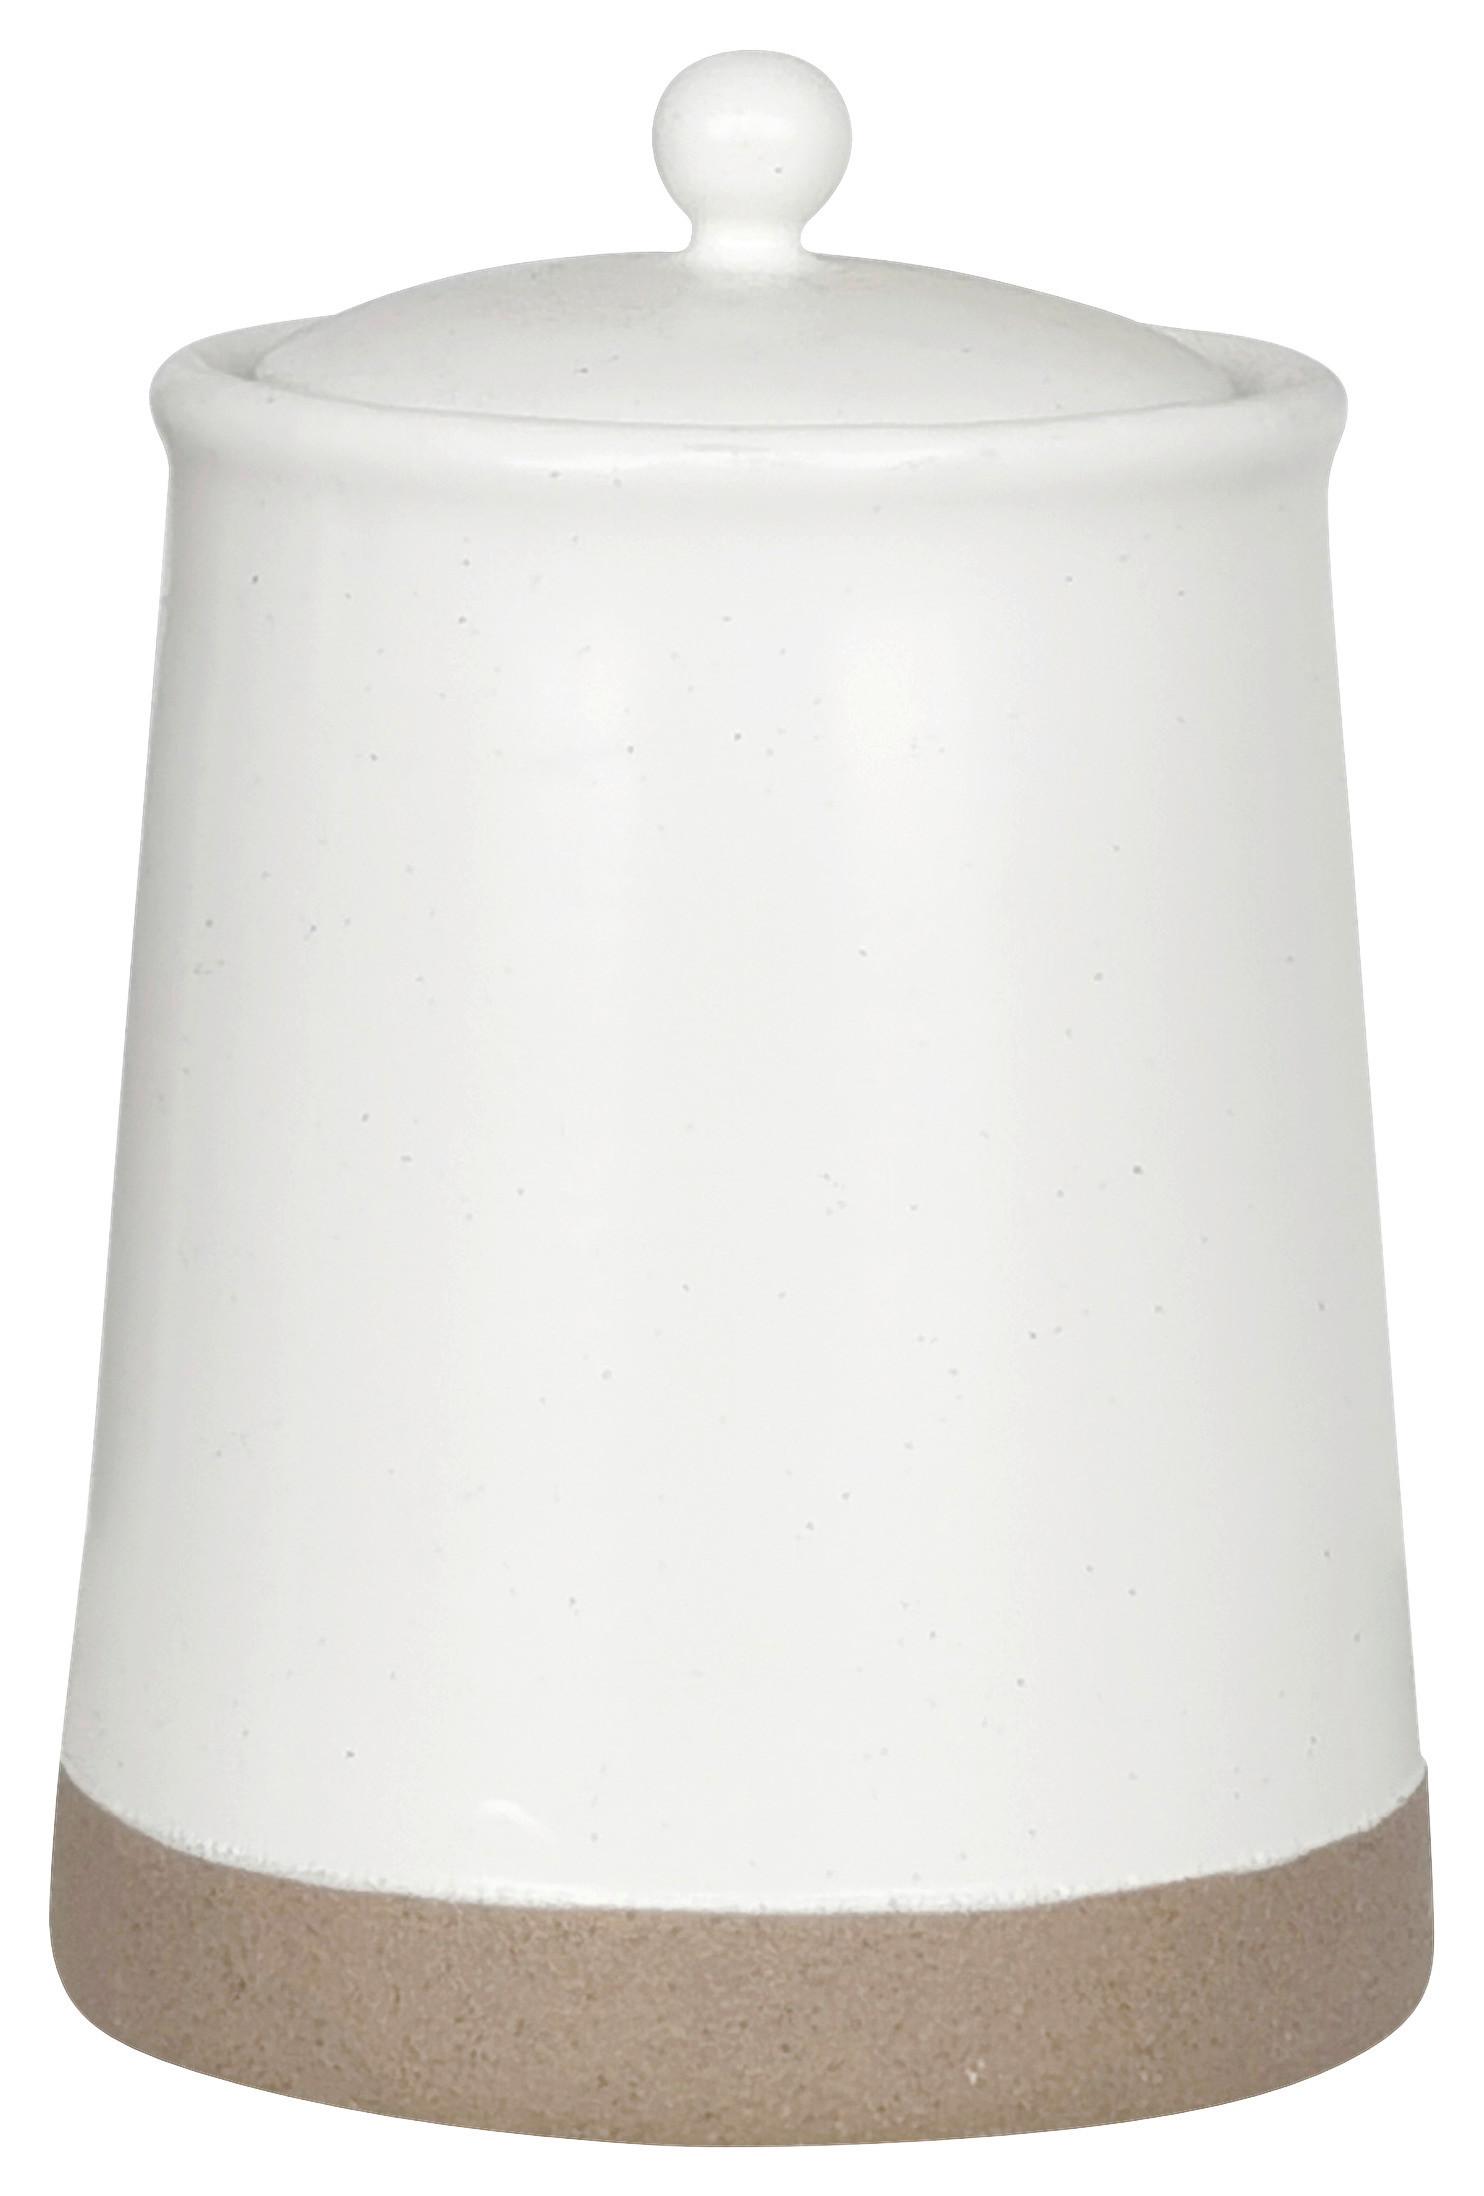 Dóza Na Potraviny Emilia -S - bílá, plast/keramika (9/12,5cm) - Zandiara